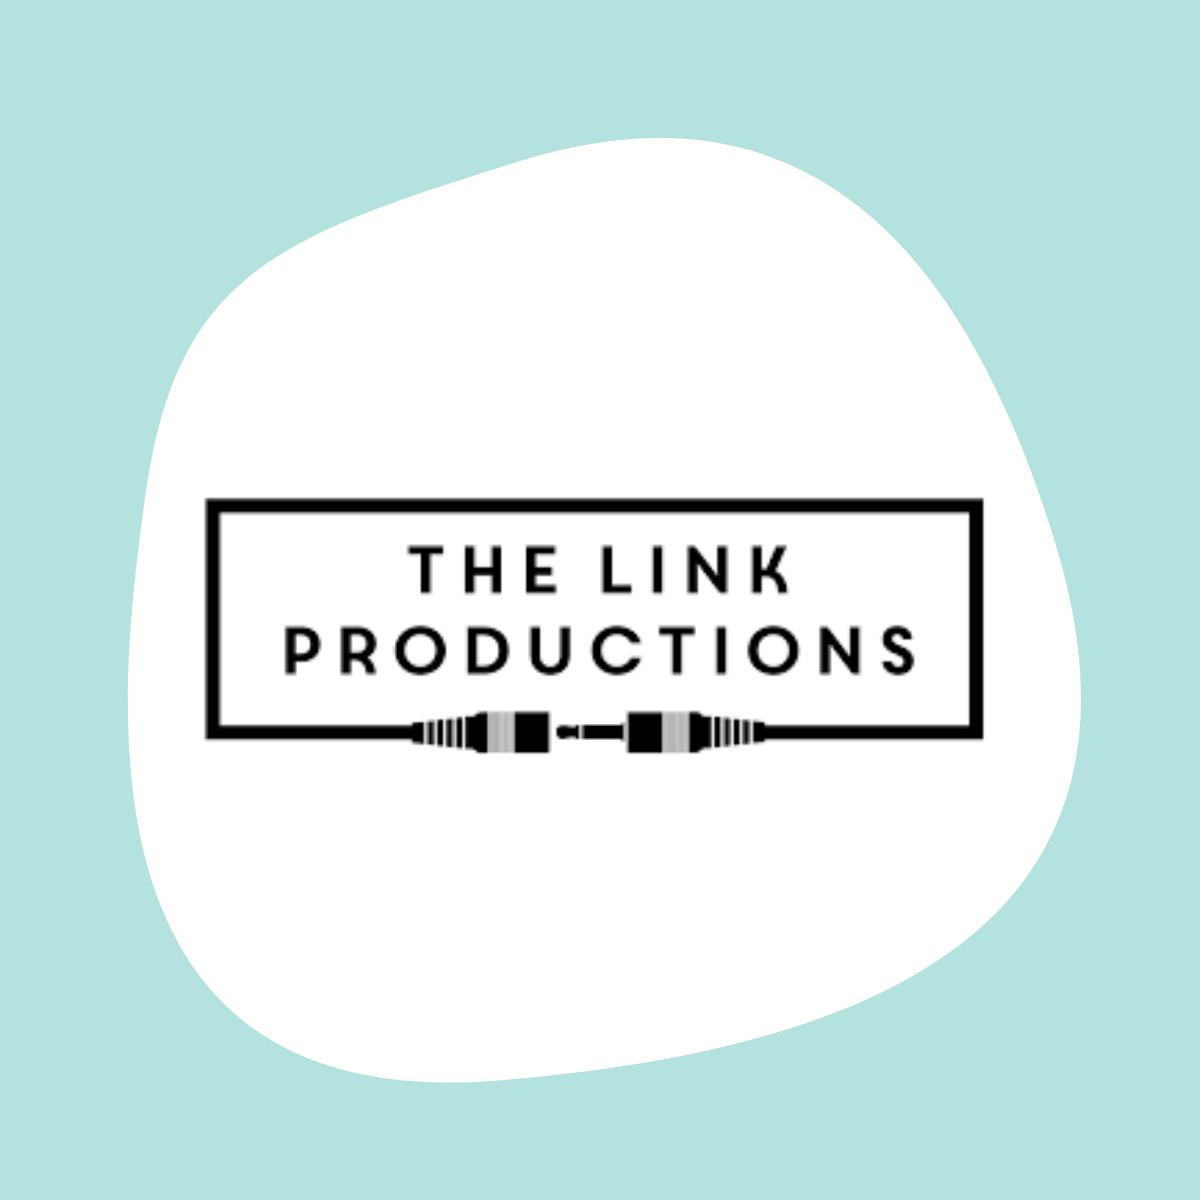 Bienvenue à THE LINK Productions !